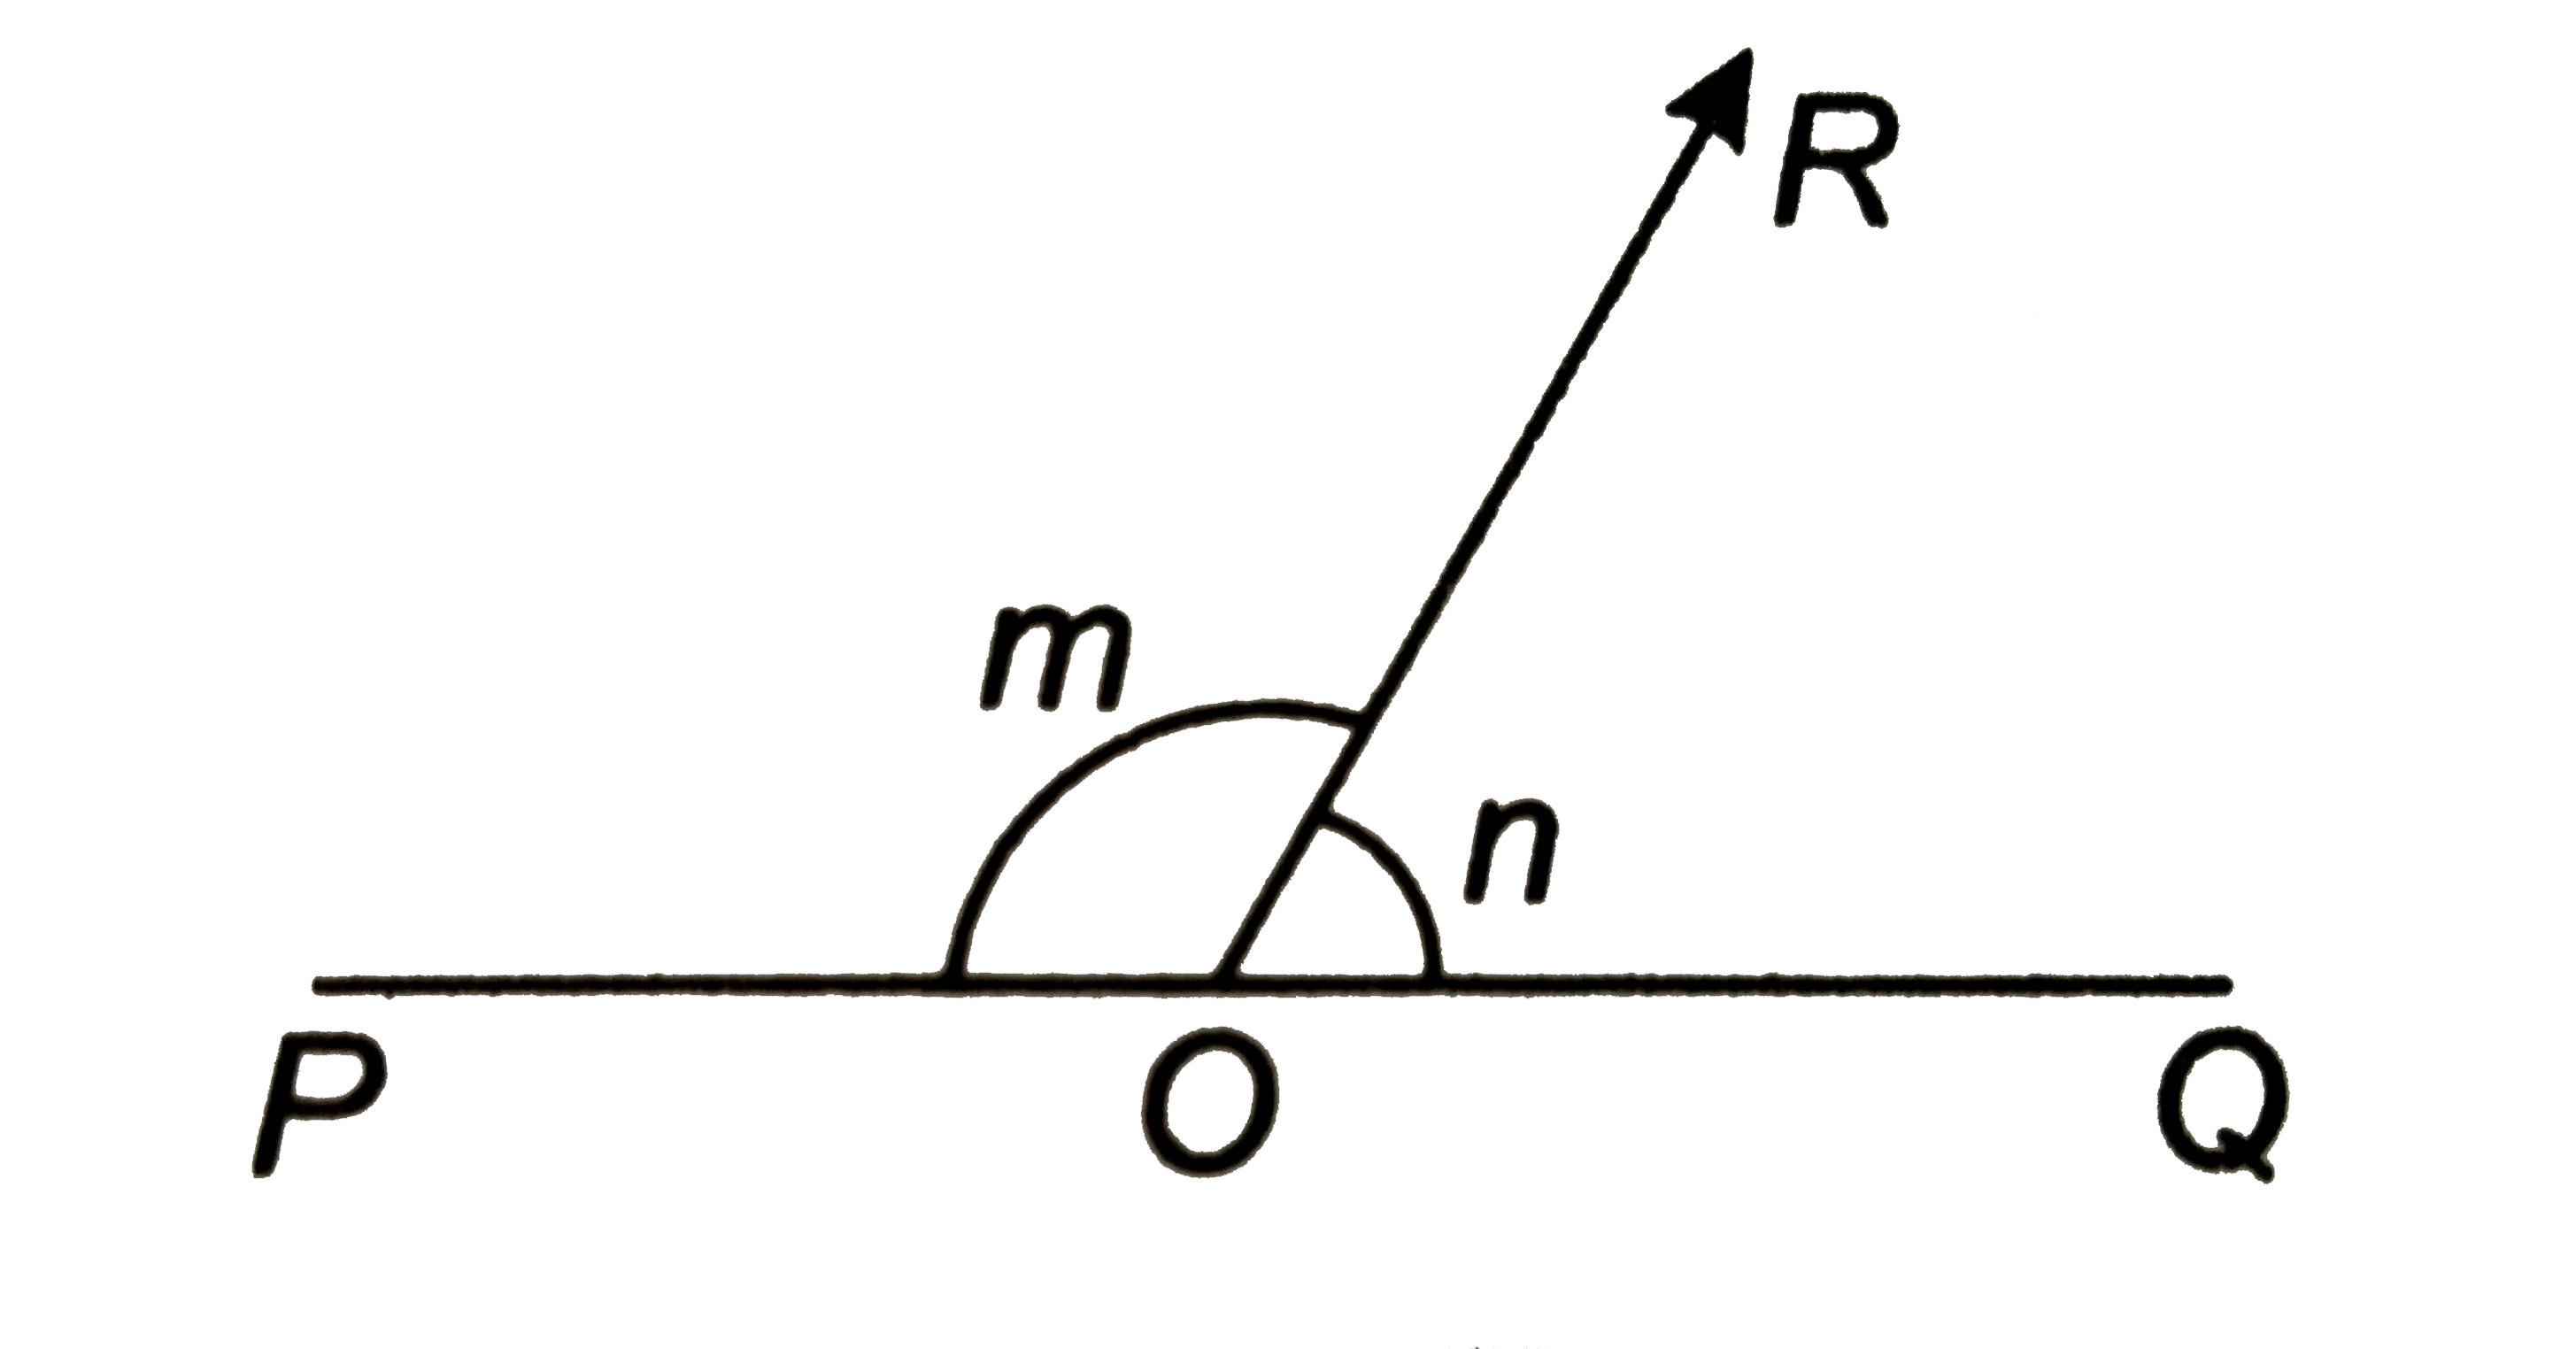 सलंगन चित्र में, POQ  एक सरल रेखा है । m और n  के मान कीजिये जबकि    (i) m-n=60^@   (ii)  m:n=7:5